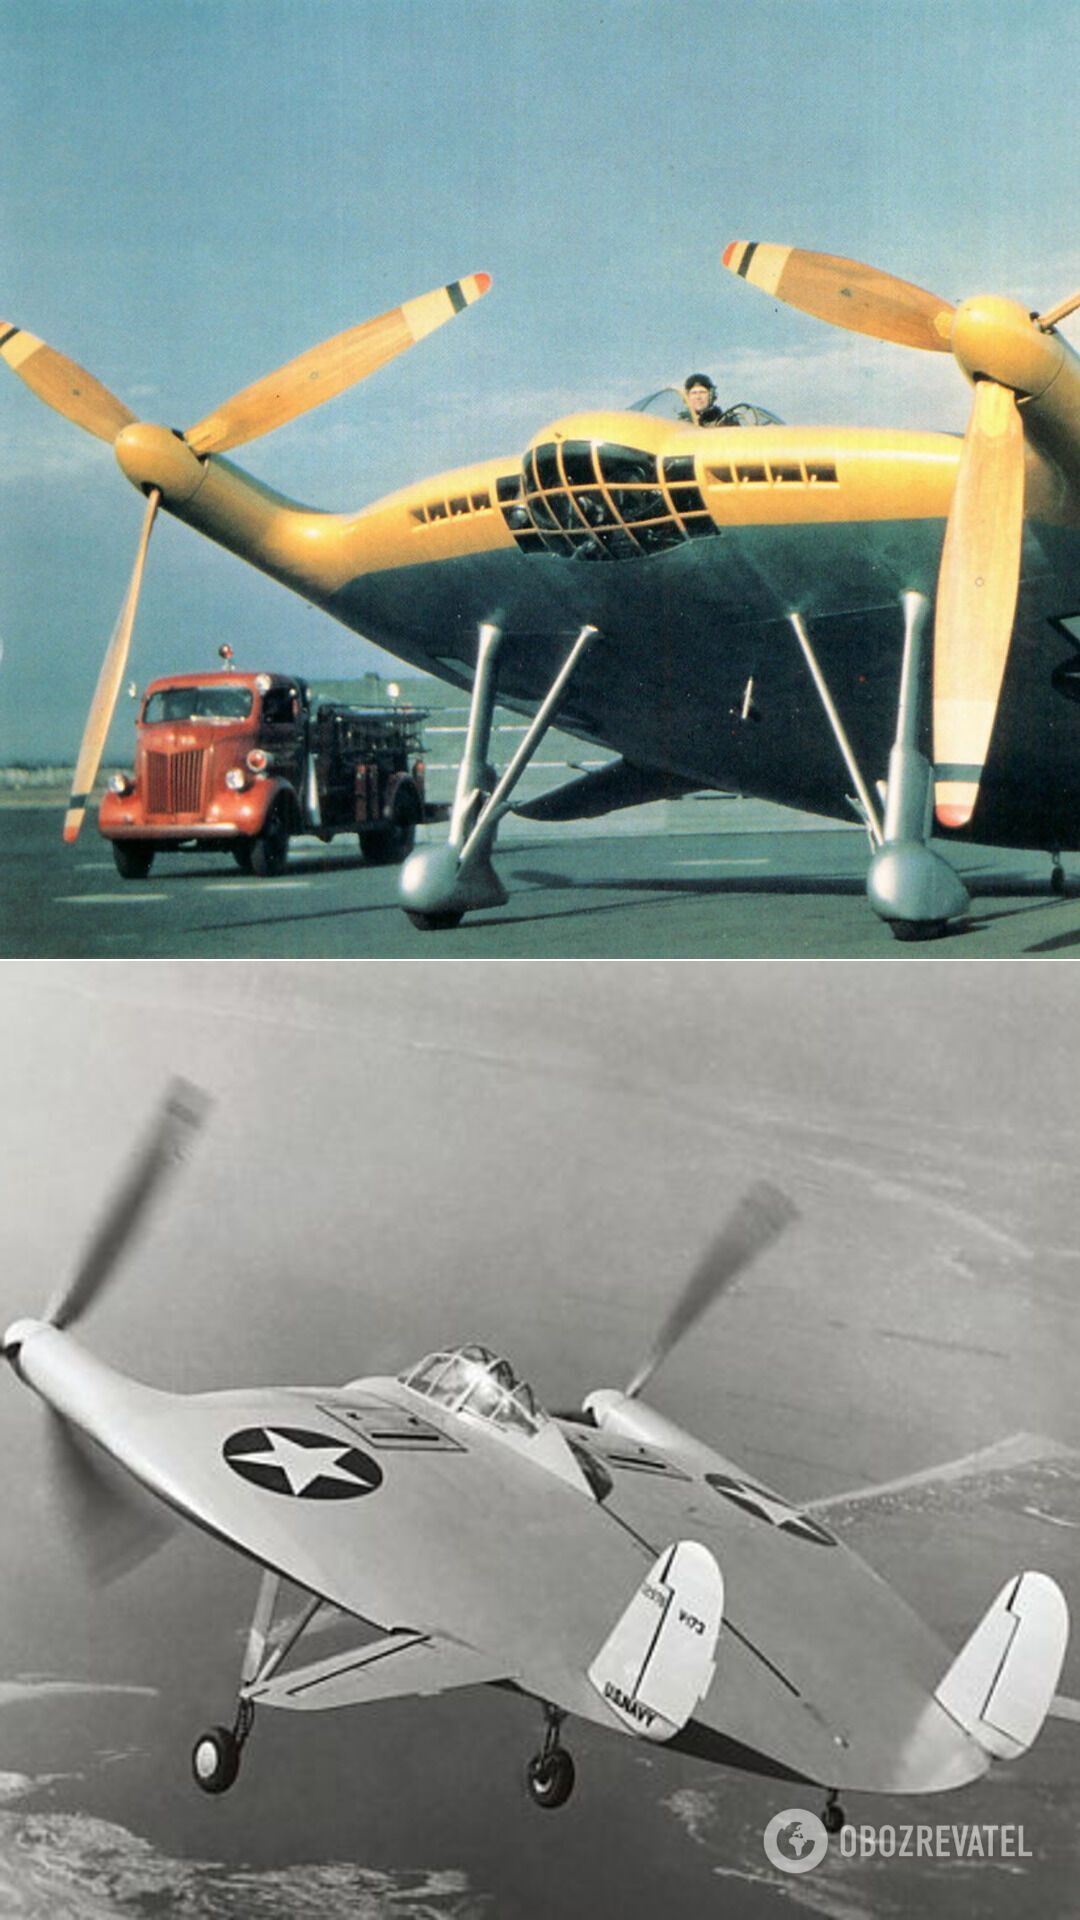 Экспериментальный самолет Vought V-173 – "летающий блин" – один из первых аппаратов вертикального/укороченного взлета и посадки. В 1940-х годах американский инженер Чарльз Циммерман создал этот самолет уникальной аэродинамической схемы, который до сих пор продолжает удивлять не только своим необычным видом, но и летными характеристиками